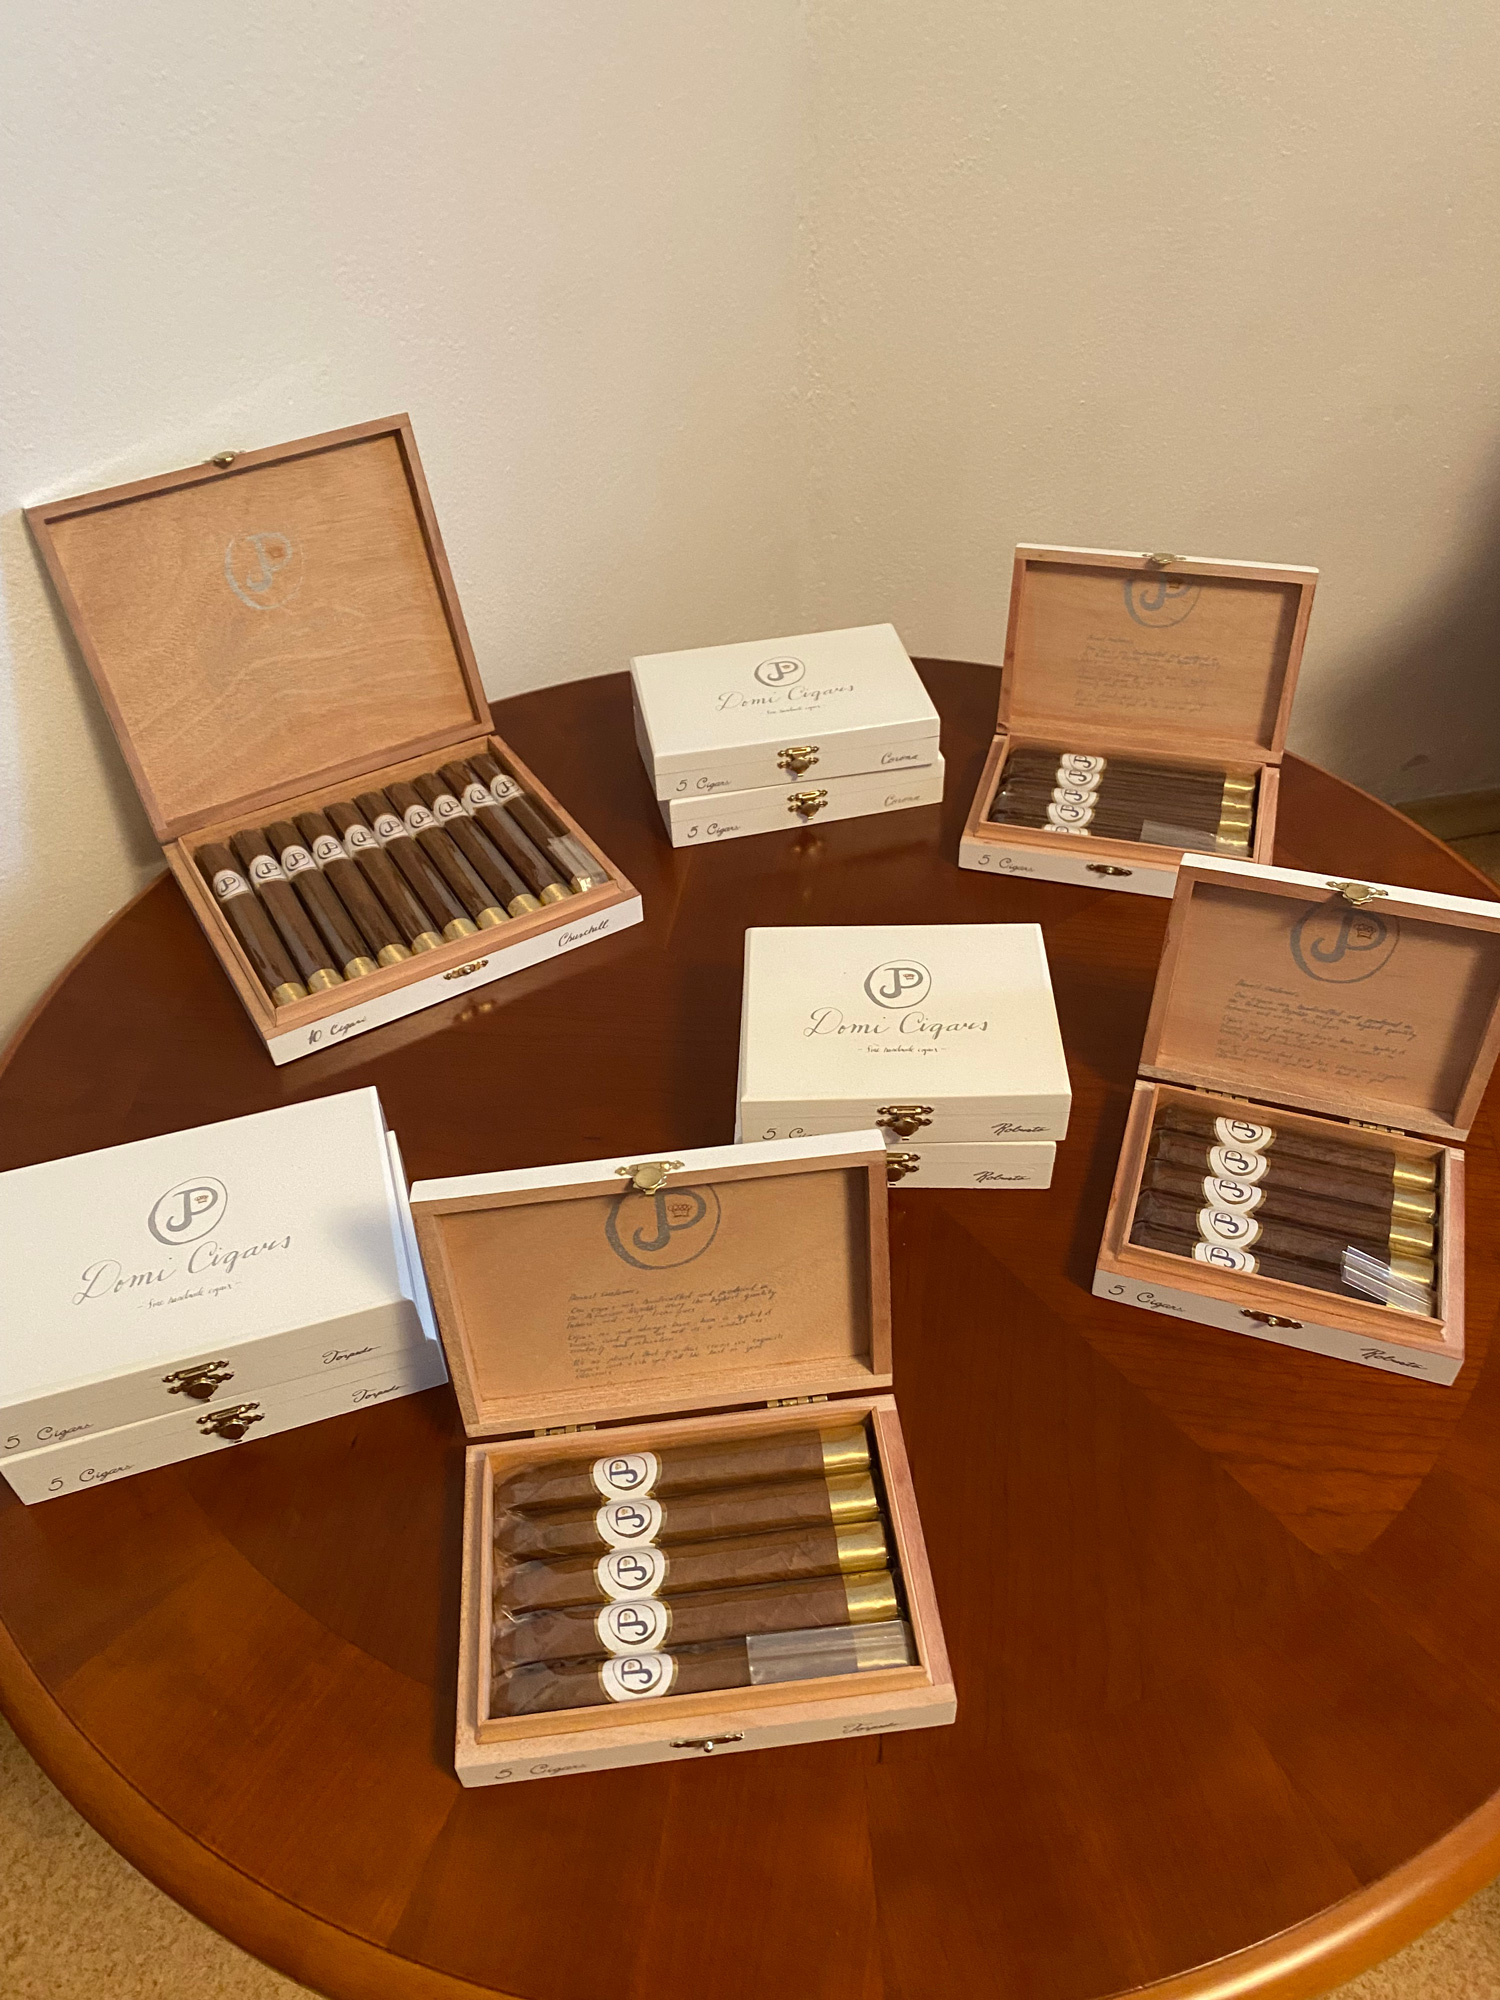 Speciální řada Domi Cigars